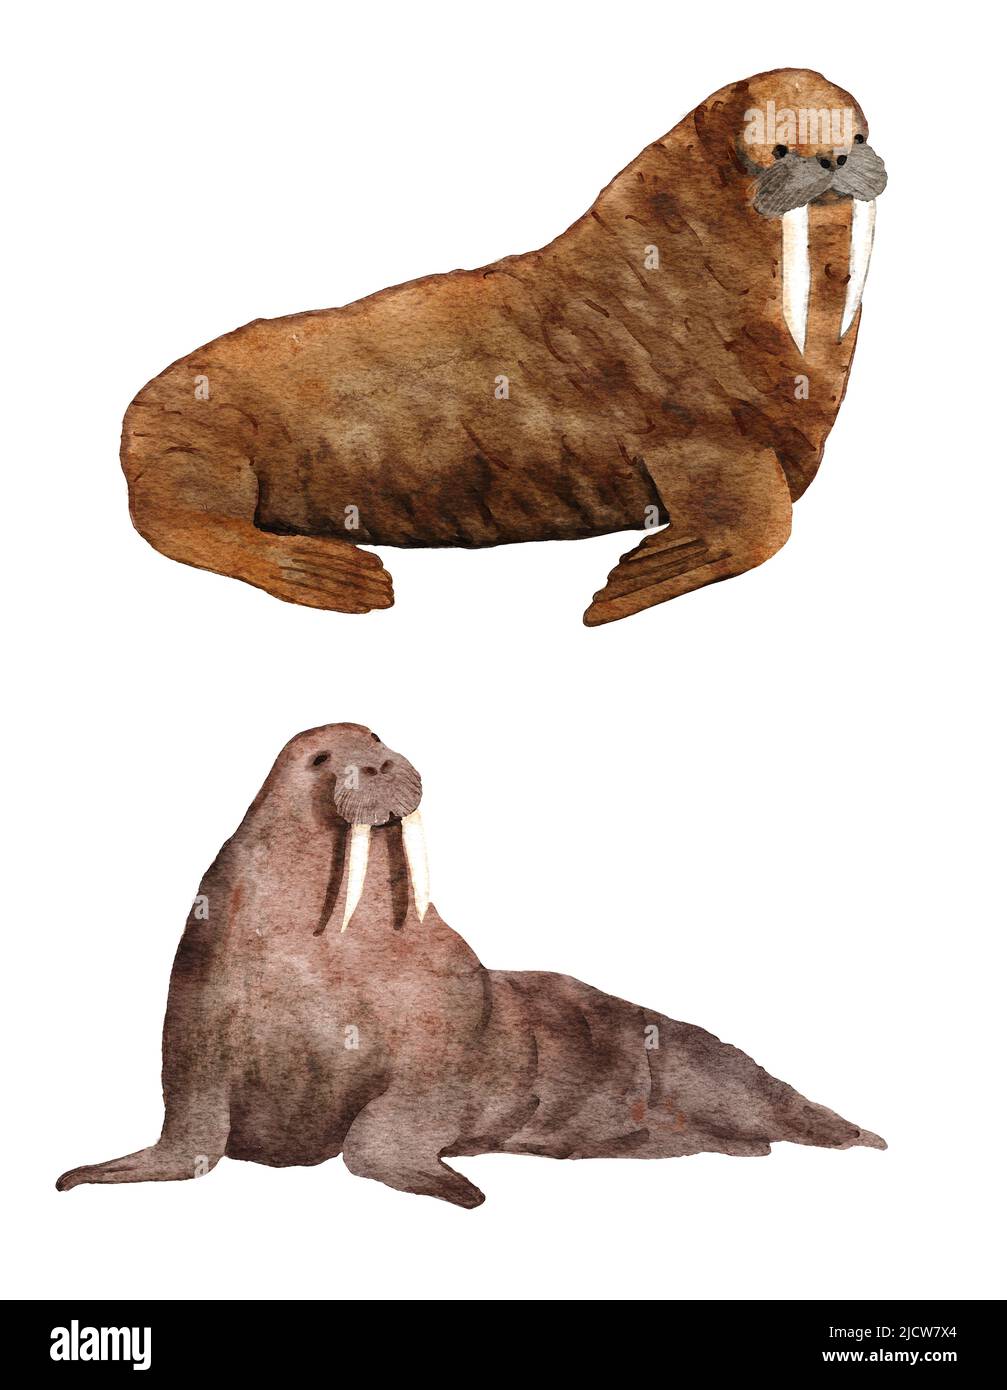 Aquarell hadn gezeichnete Illustration von atlantic Walrus, bedrohte Meeresozeanarten. Marine Säugetiere Tierwelt, Nordpolare Tier, braunes Fell. Unterwasserwelt Kreatur Ökologie Umwelt Stockfoto